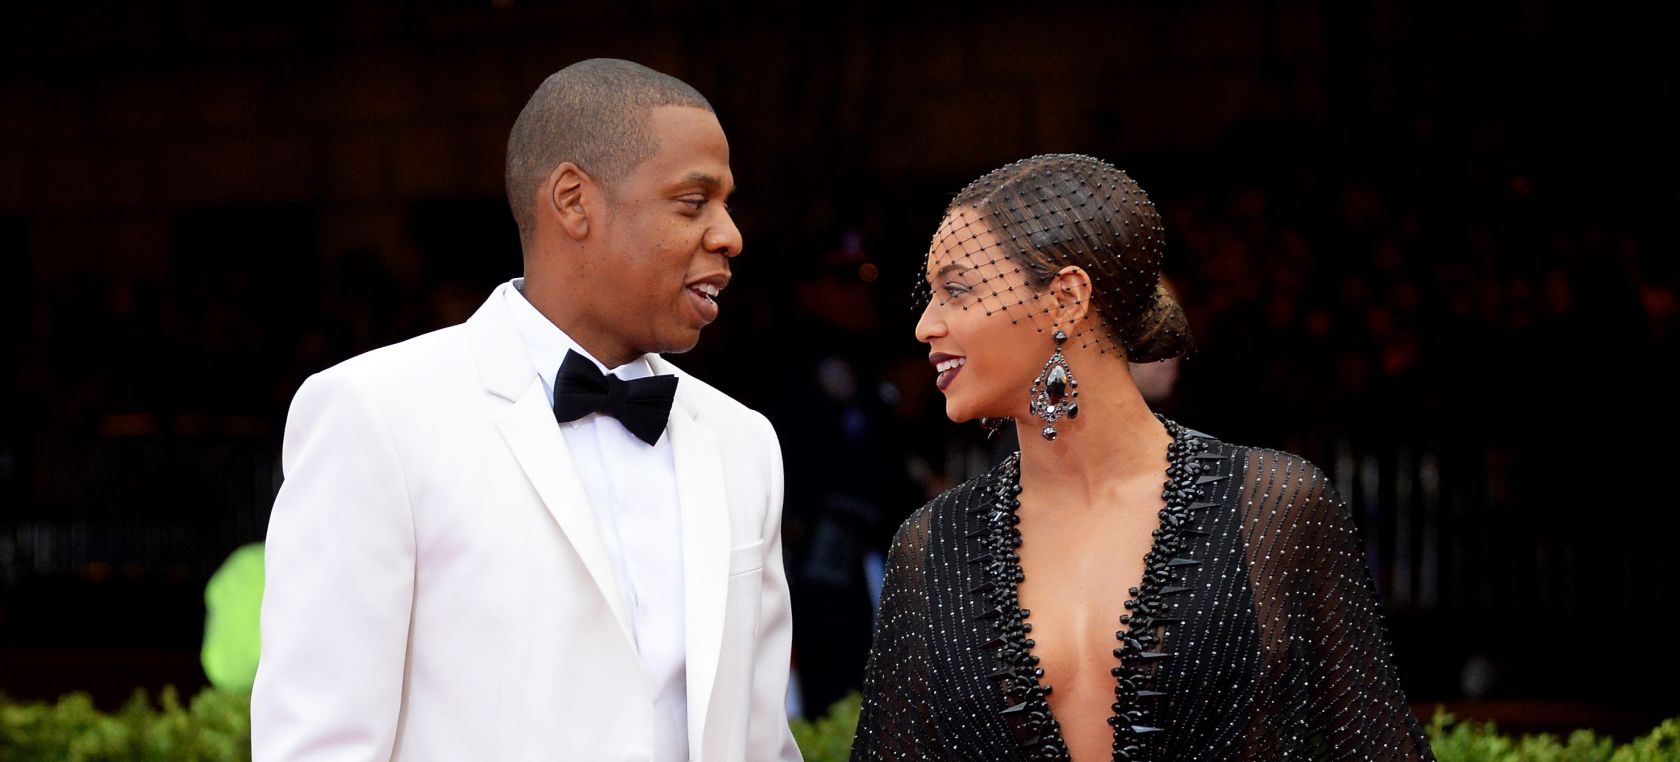 El día que Solange Knowles agredió a Jay-Z y Beyoncé permaneció impasible